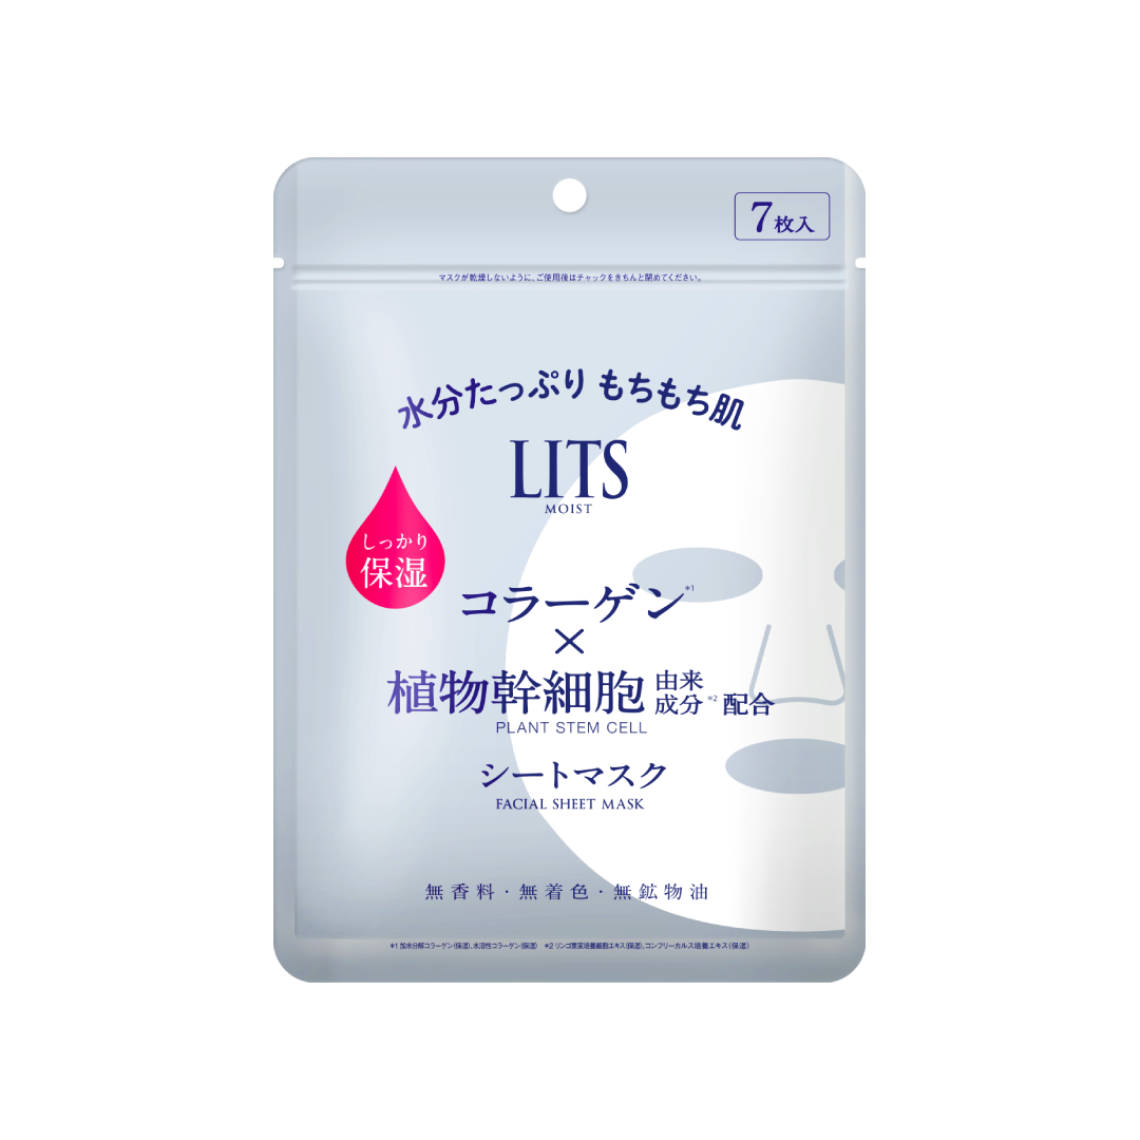 LITS 植物幹細胞保濕面膜 7 pcs